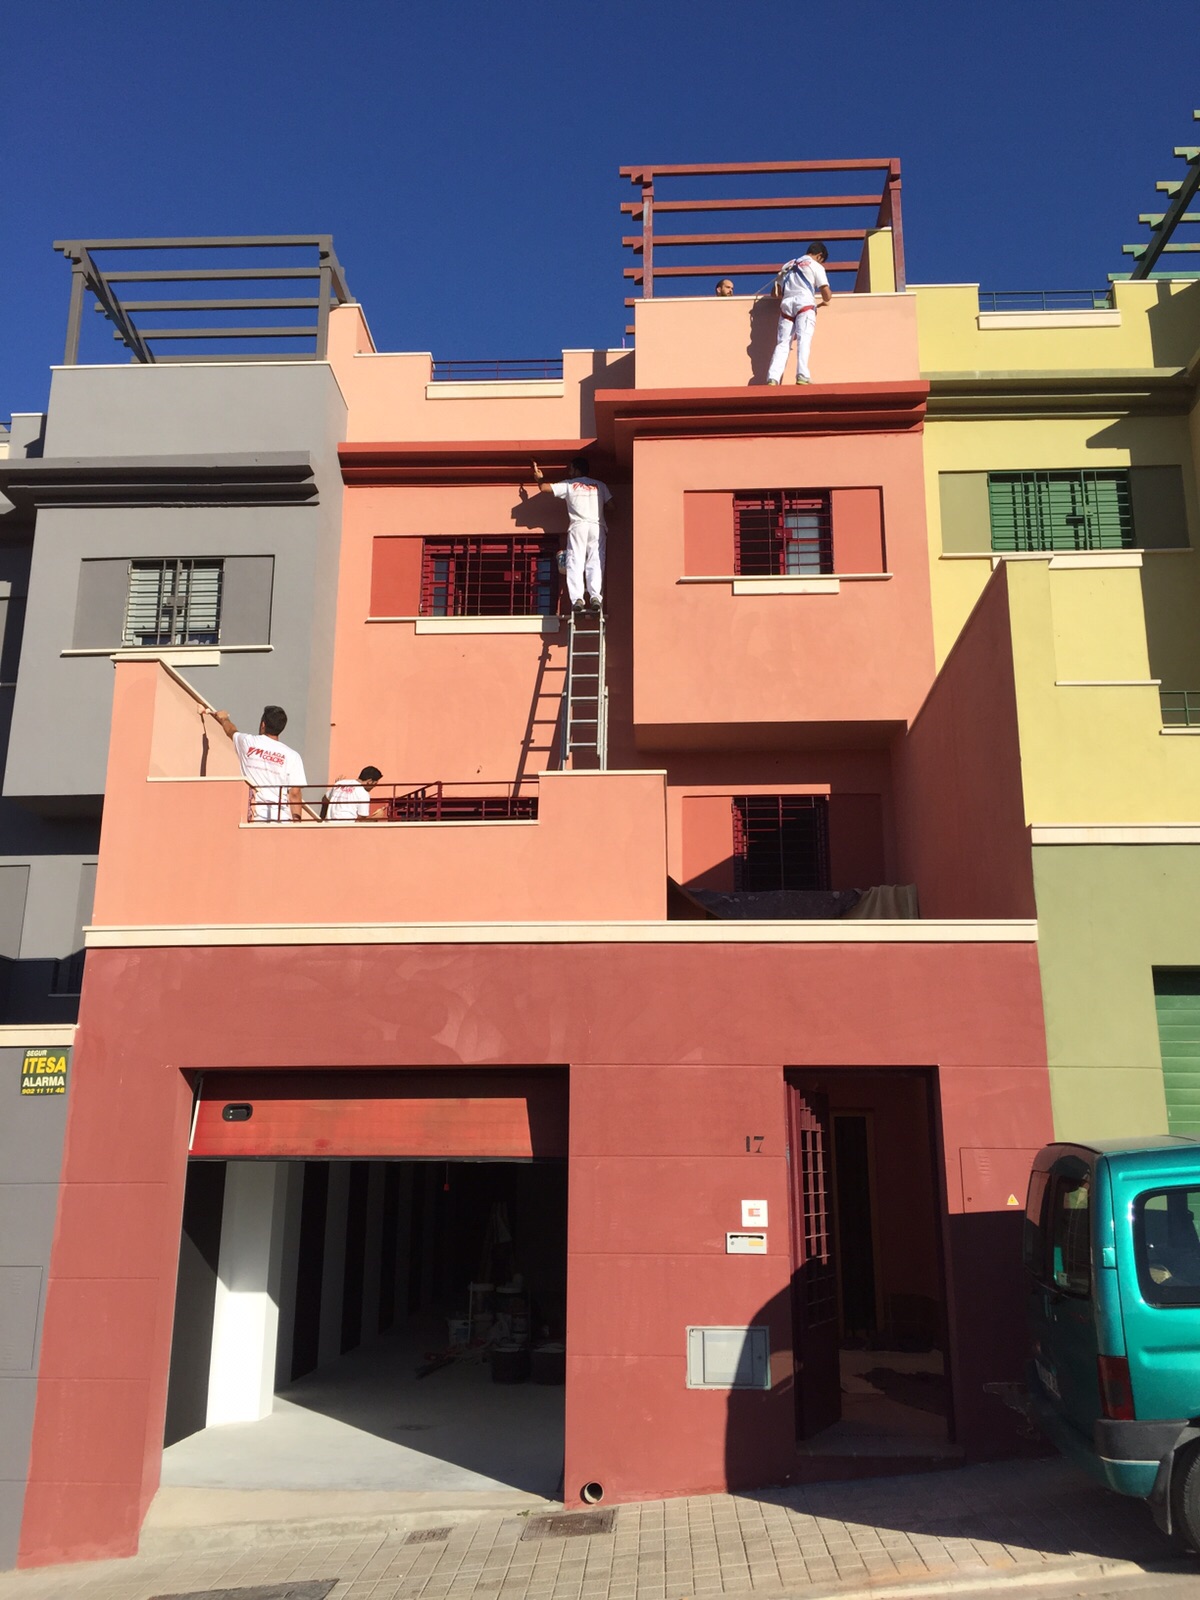 Rehabilitacion de fachadas Malaga Colors 4 | Pintores Málaga Colors